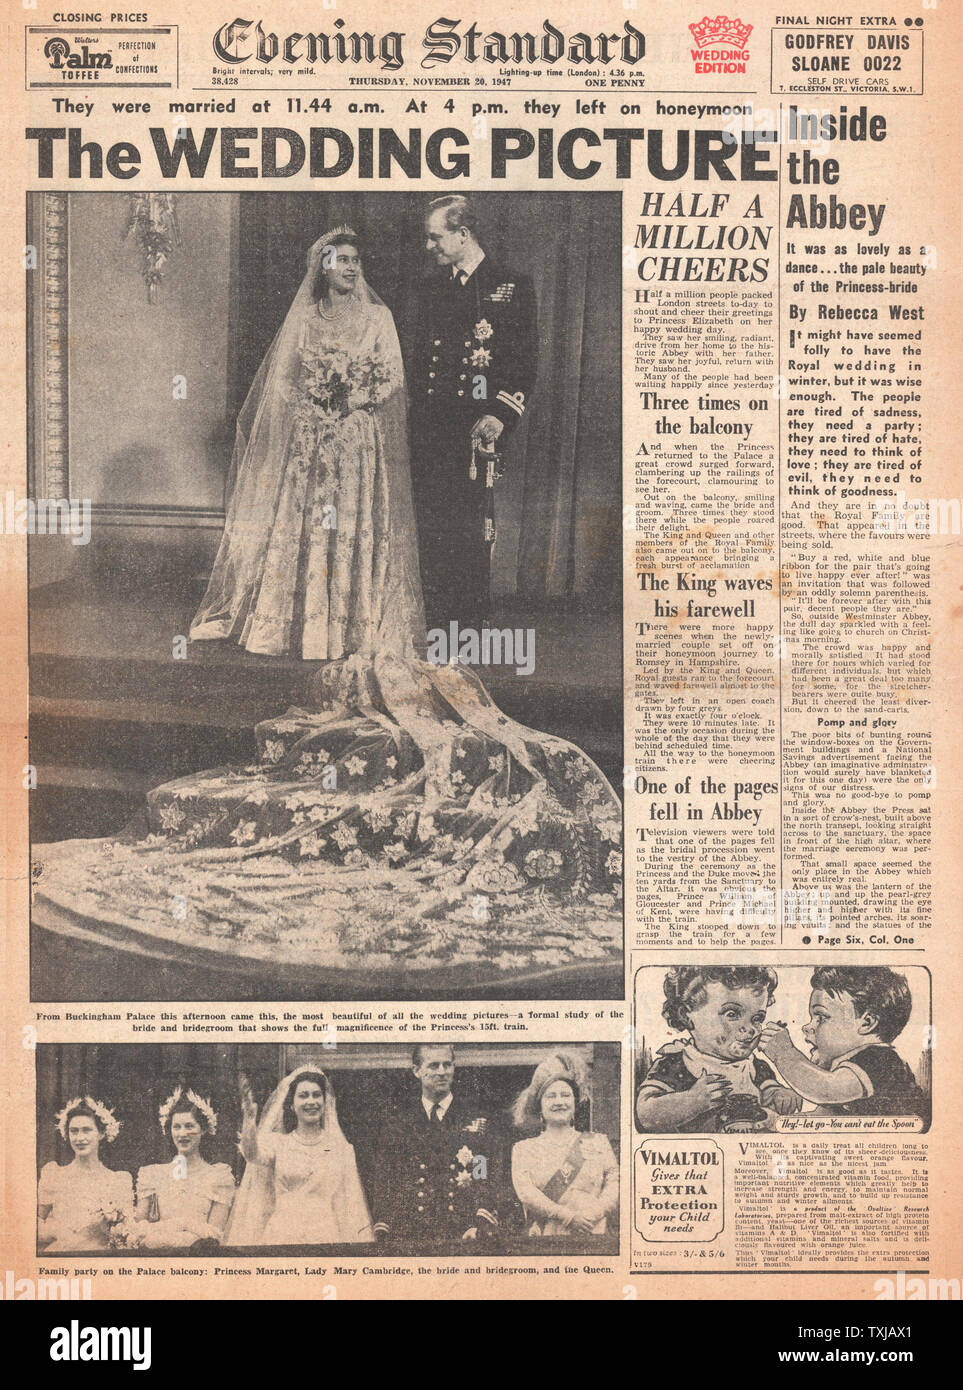 1947 Evening Standard giornale pagina anteriore la Principessa Elisabetta sposa Philip Mountbatten, Duca di Edimburgo Foto Stock